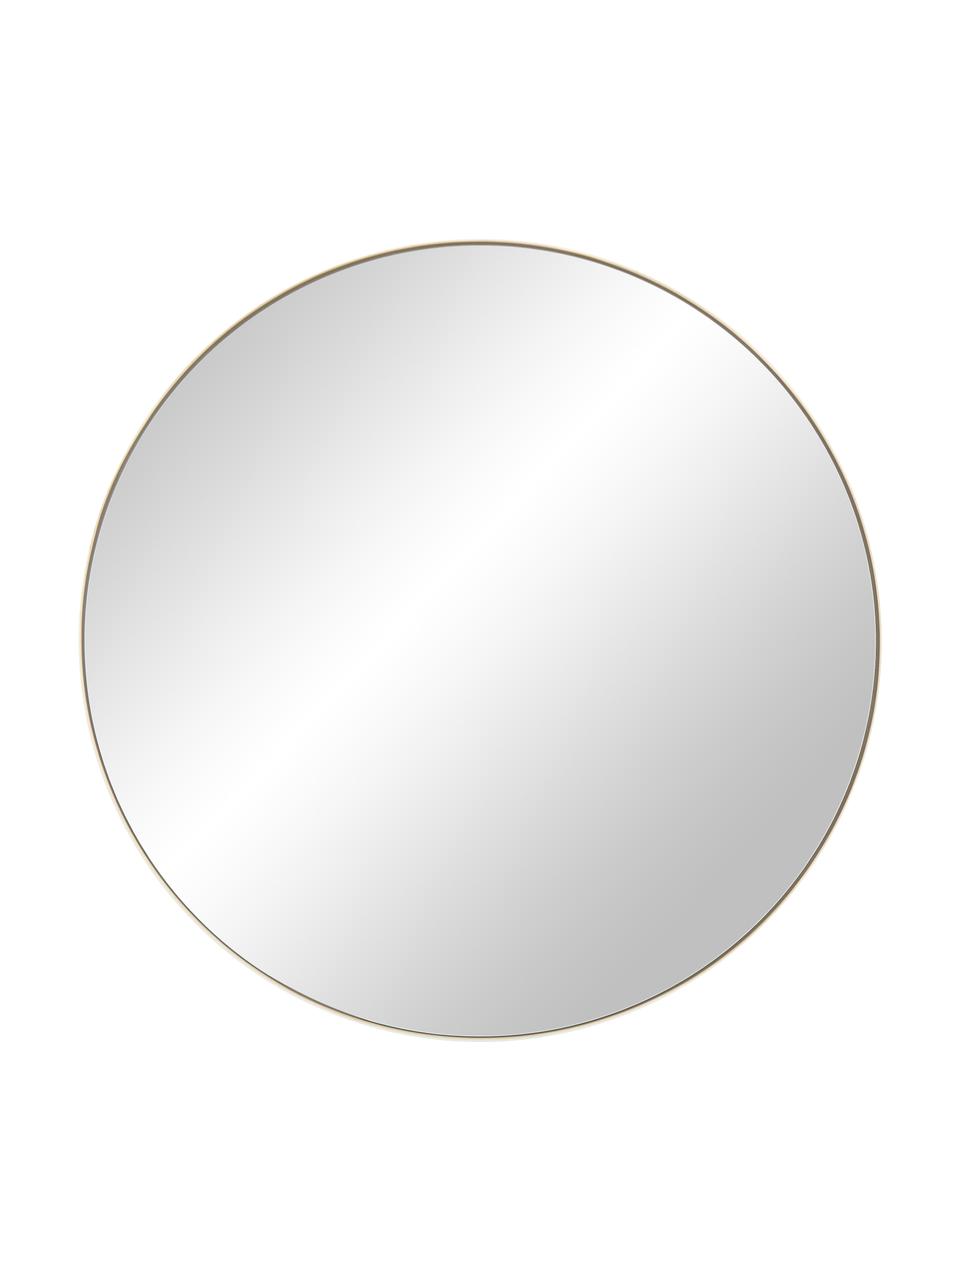 Specchio rotondo da parete con cornice dorata Ivy, Cornice: metallo ottonato, Superficie dello specchio: lastra di vetro, Retro: pannello di fibra a media, Ottonato, Ø 100 cm